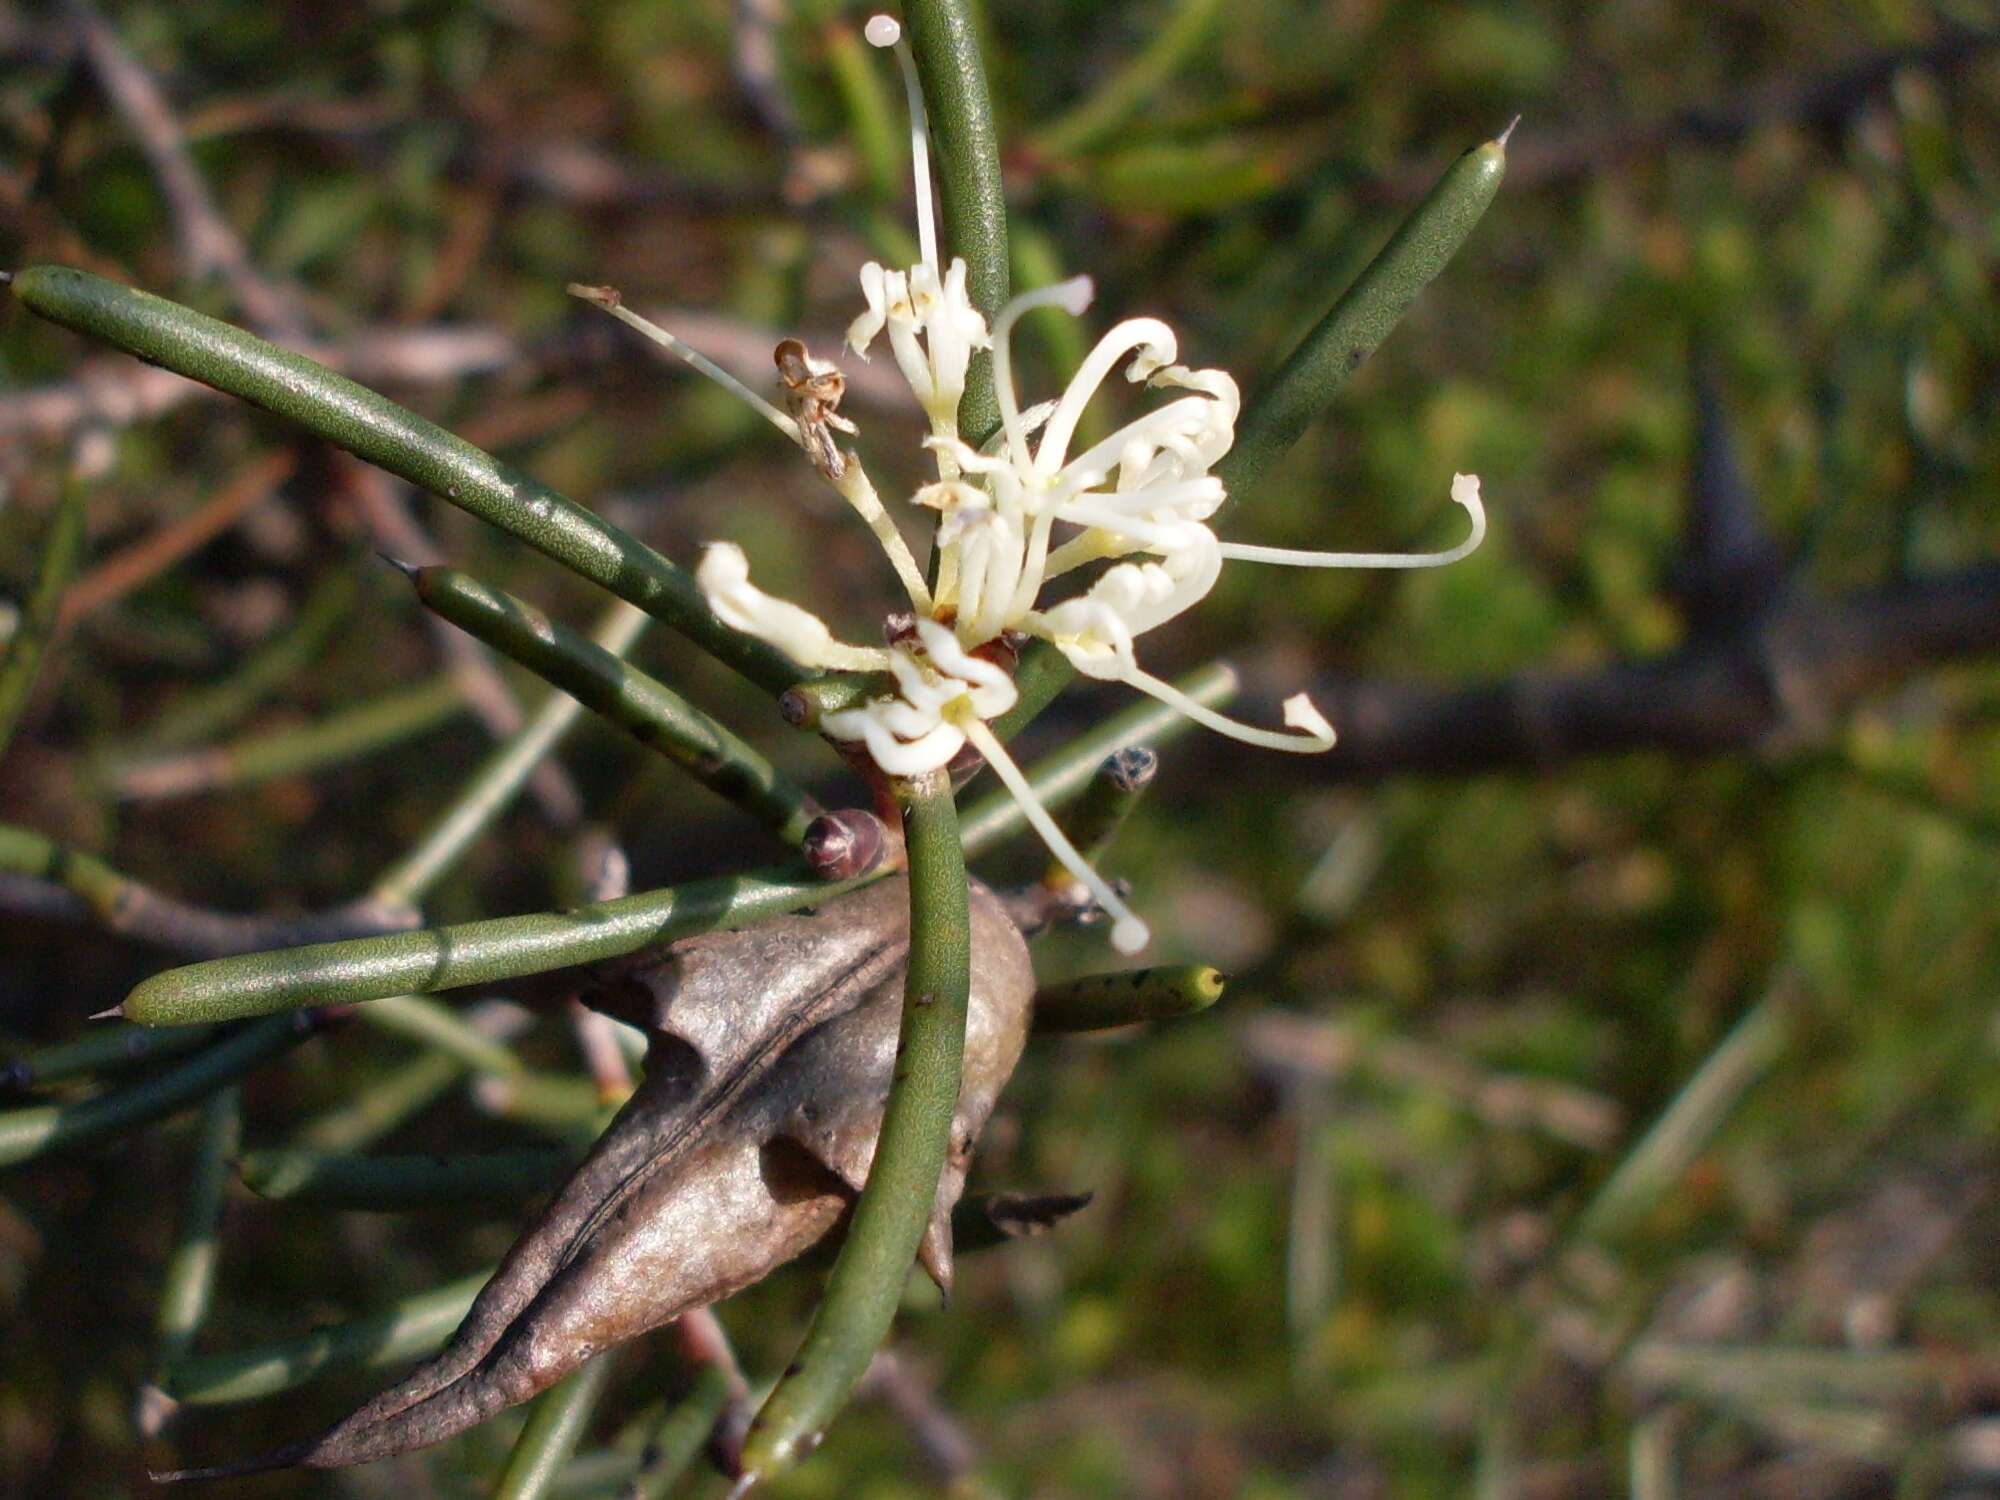 Image of Hakea teretifolia (Salisb.) Britten